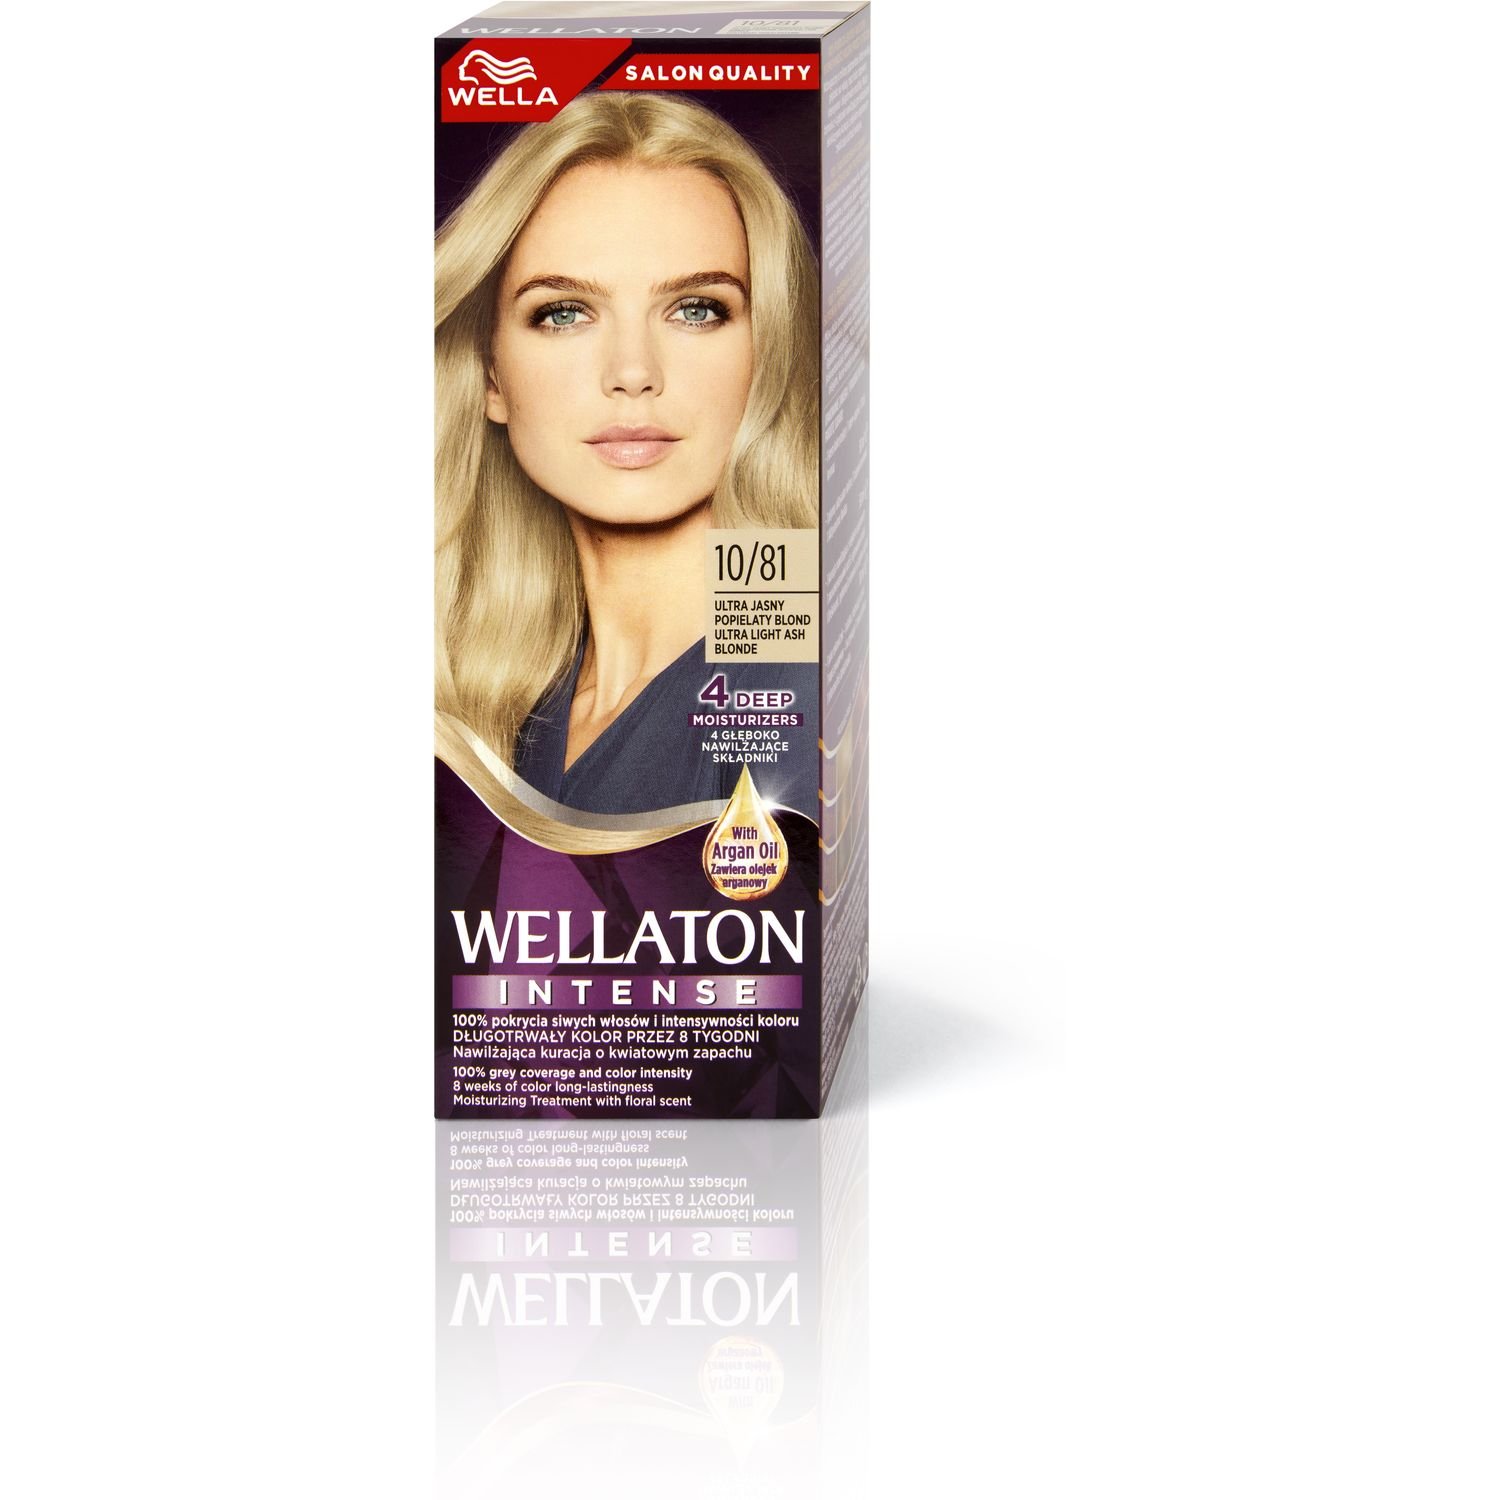 Інтенсивна крем-фарба для волосся Wellaton, відтінок 10/81 (Ультра світлий попелястий блонд), 110 мл - фото 6